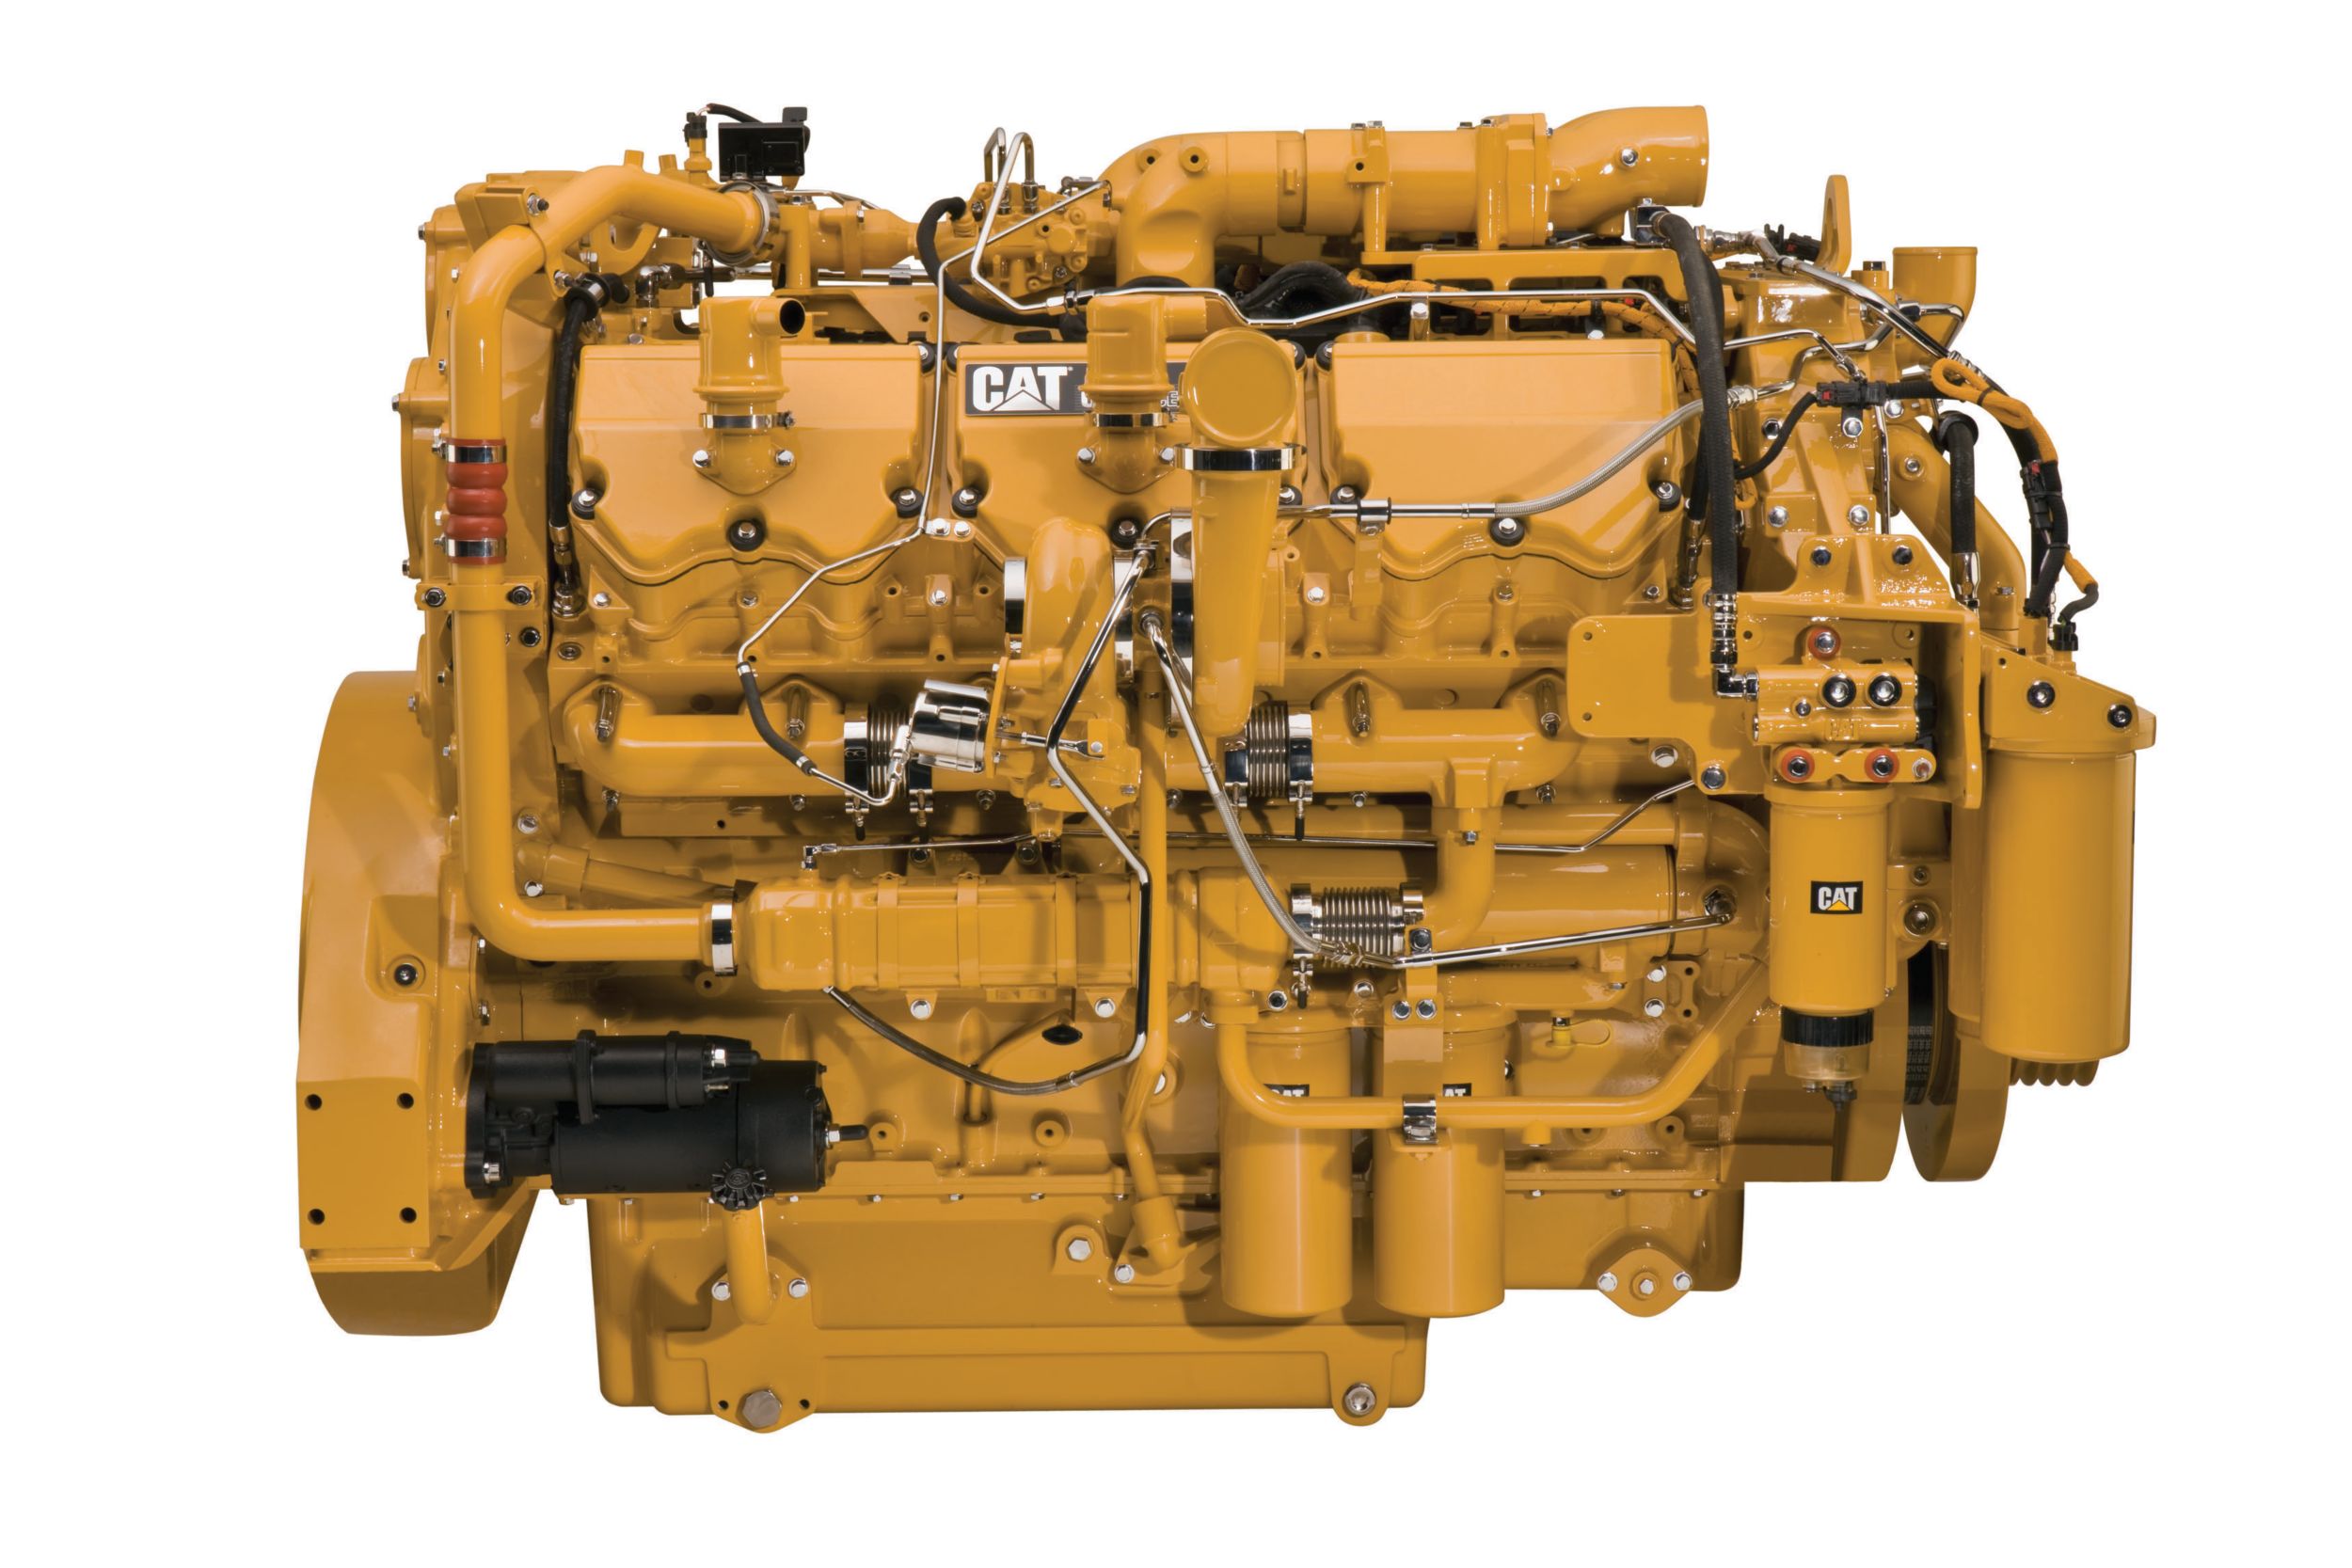 Motor a Gasolina C32 ACERT™ Final do Tier 4 - Motores para Manutenção de Poços